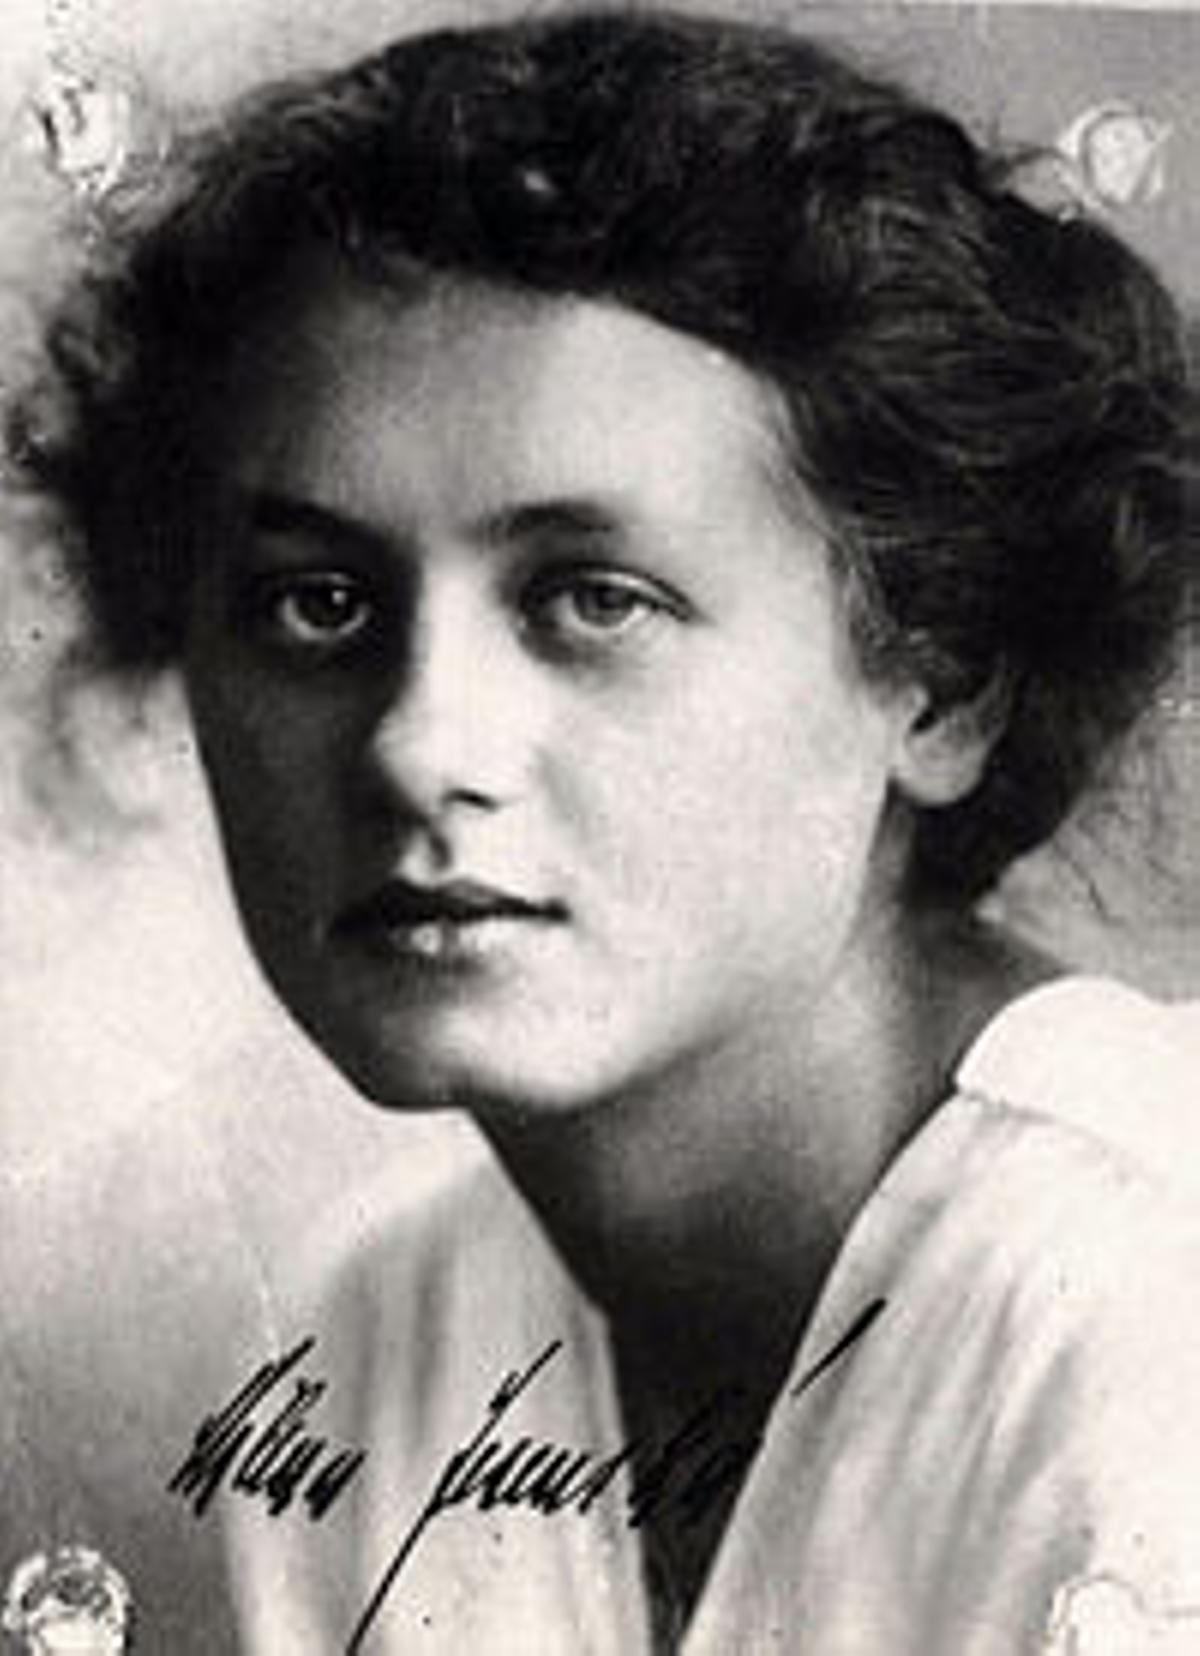 Milena Jesenská, traductora de Kafka, con quien tuvo una relación sentimental.